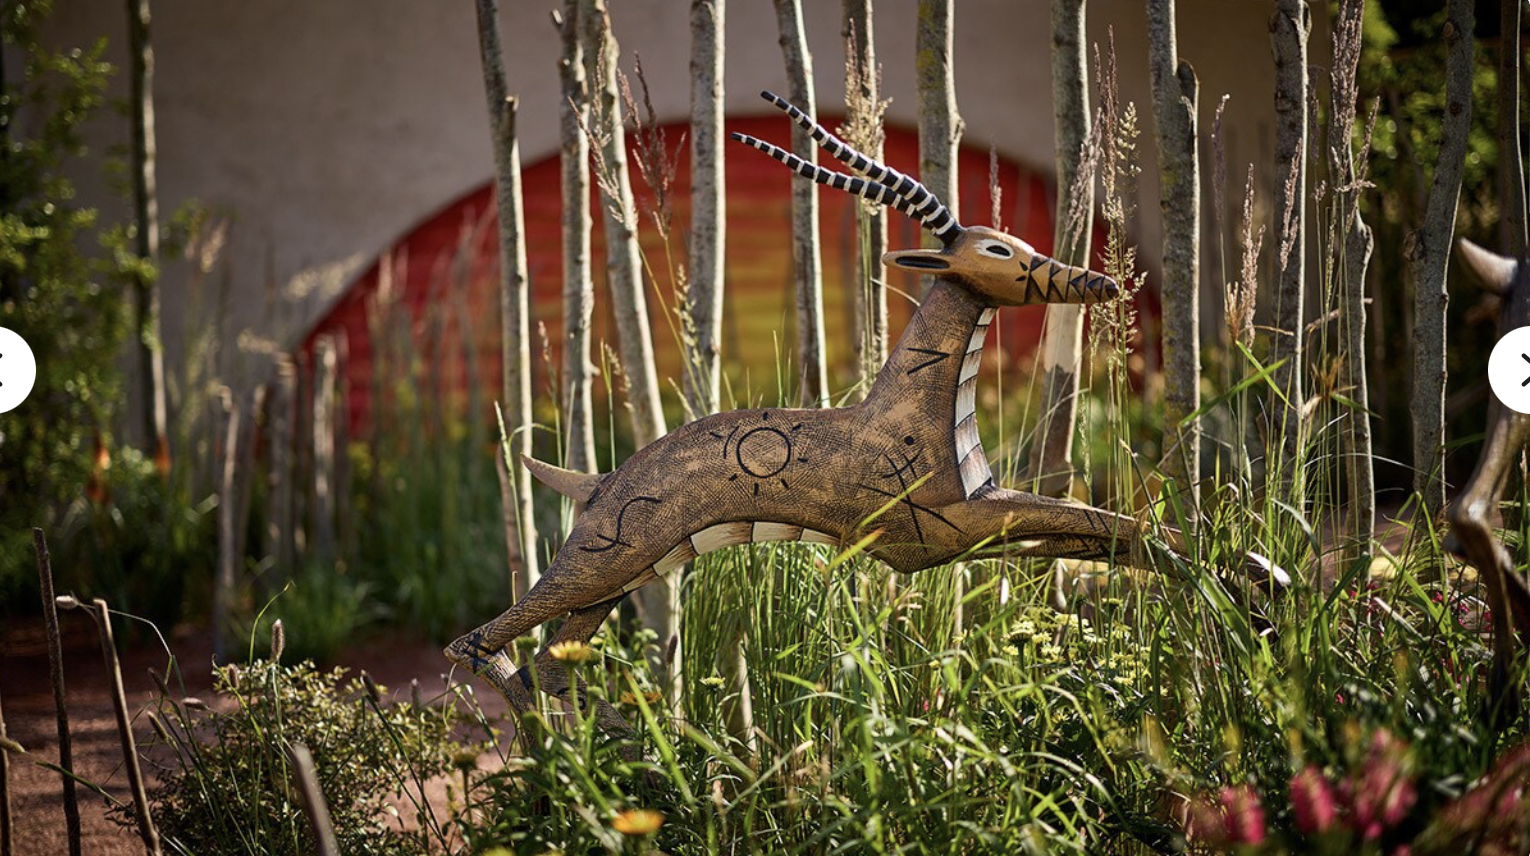 a statue of a deer jumping through tall grass